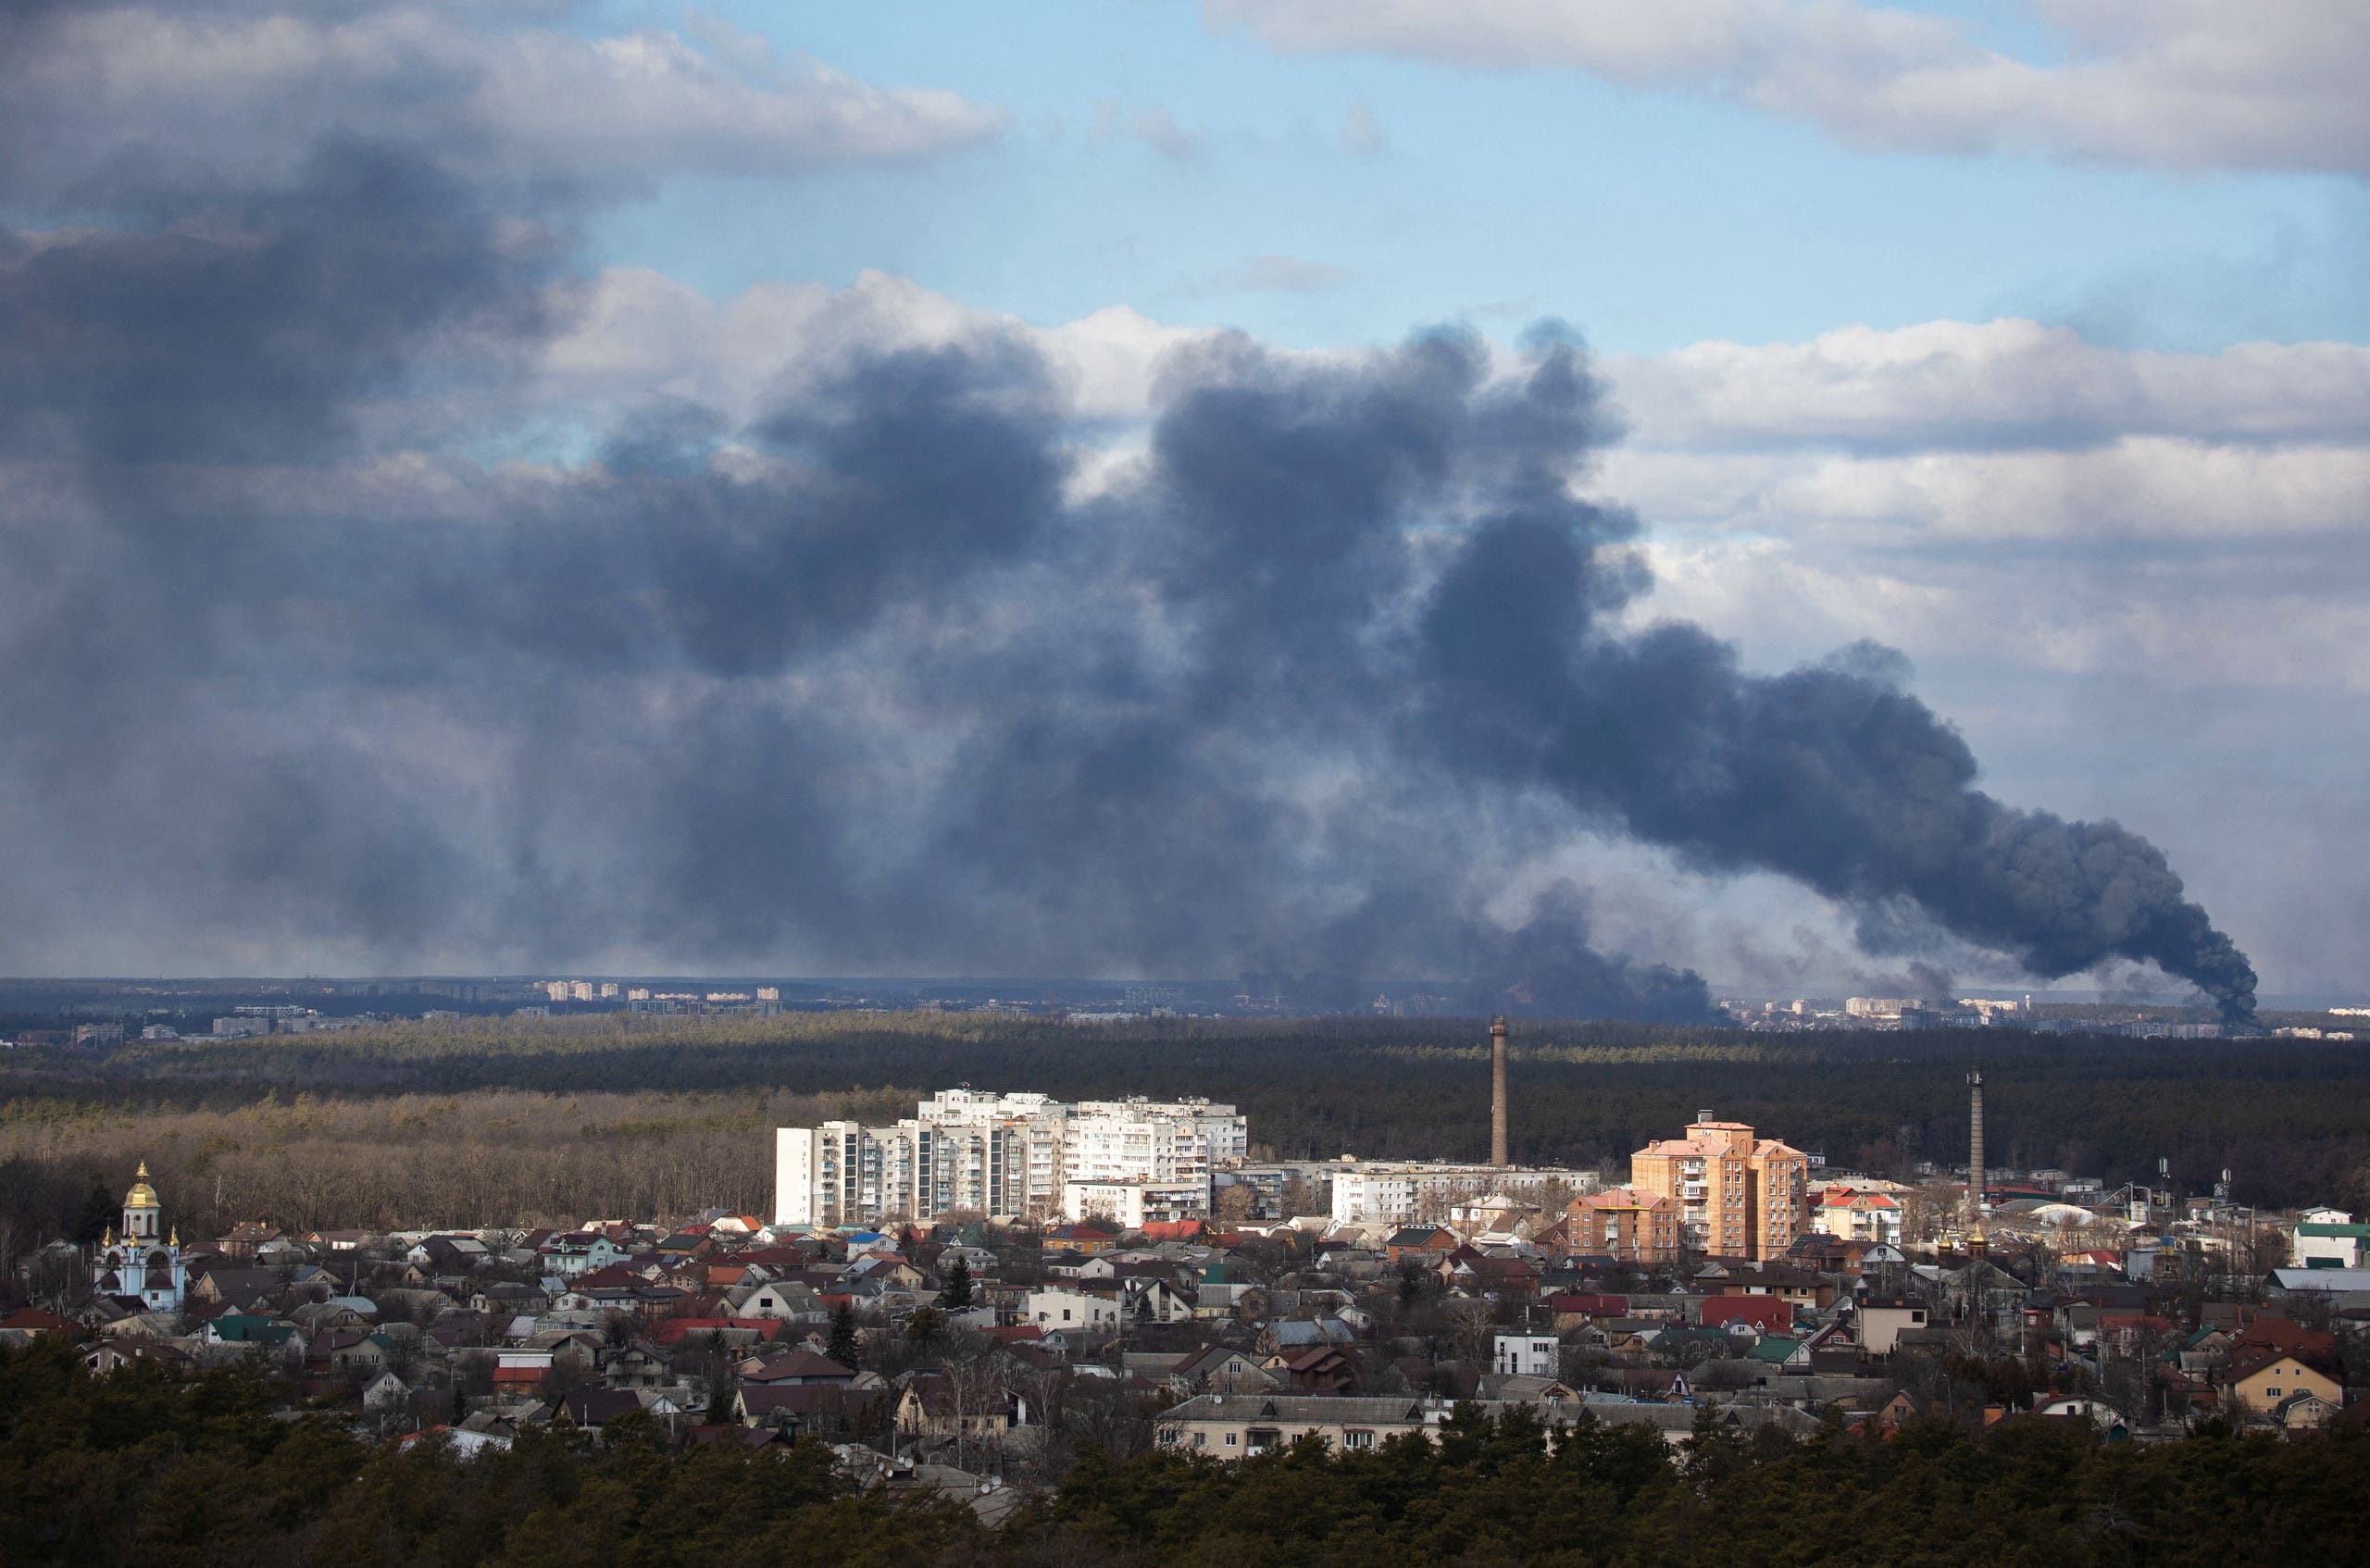 أعمدة الدخان تتصاعد في سماء العاصمة كييف بسبب الهجوم الروسي - رويترز 